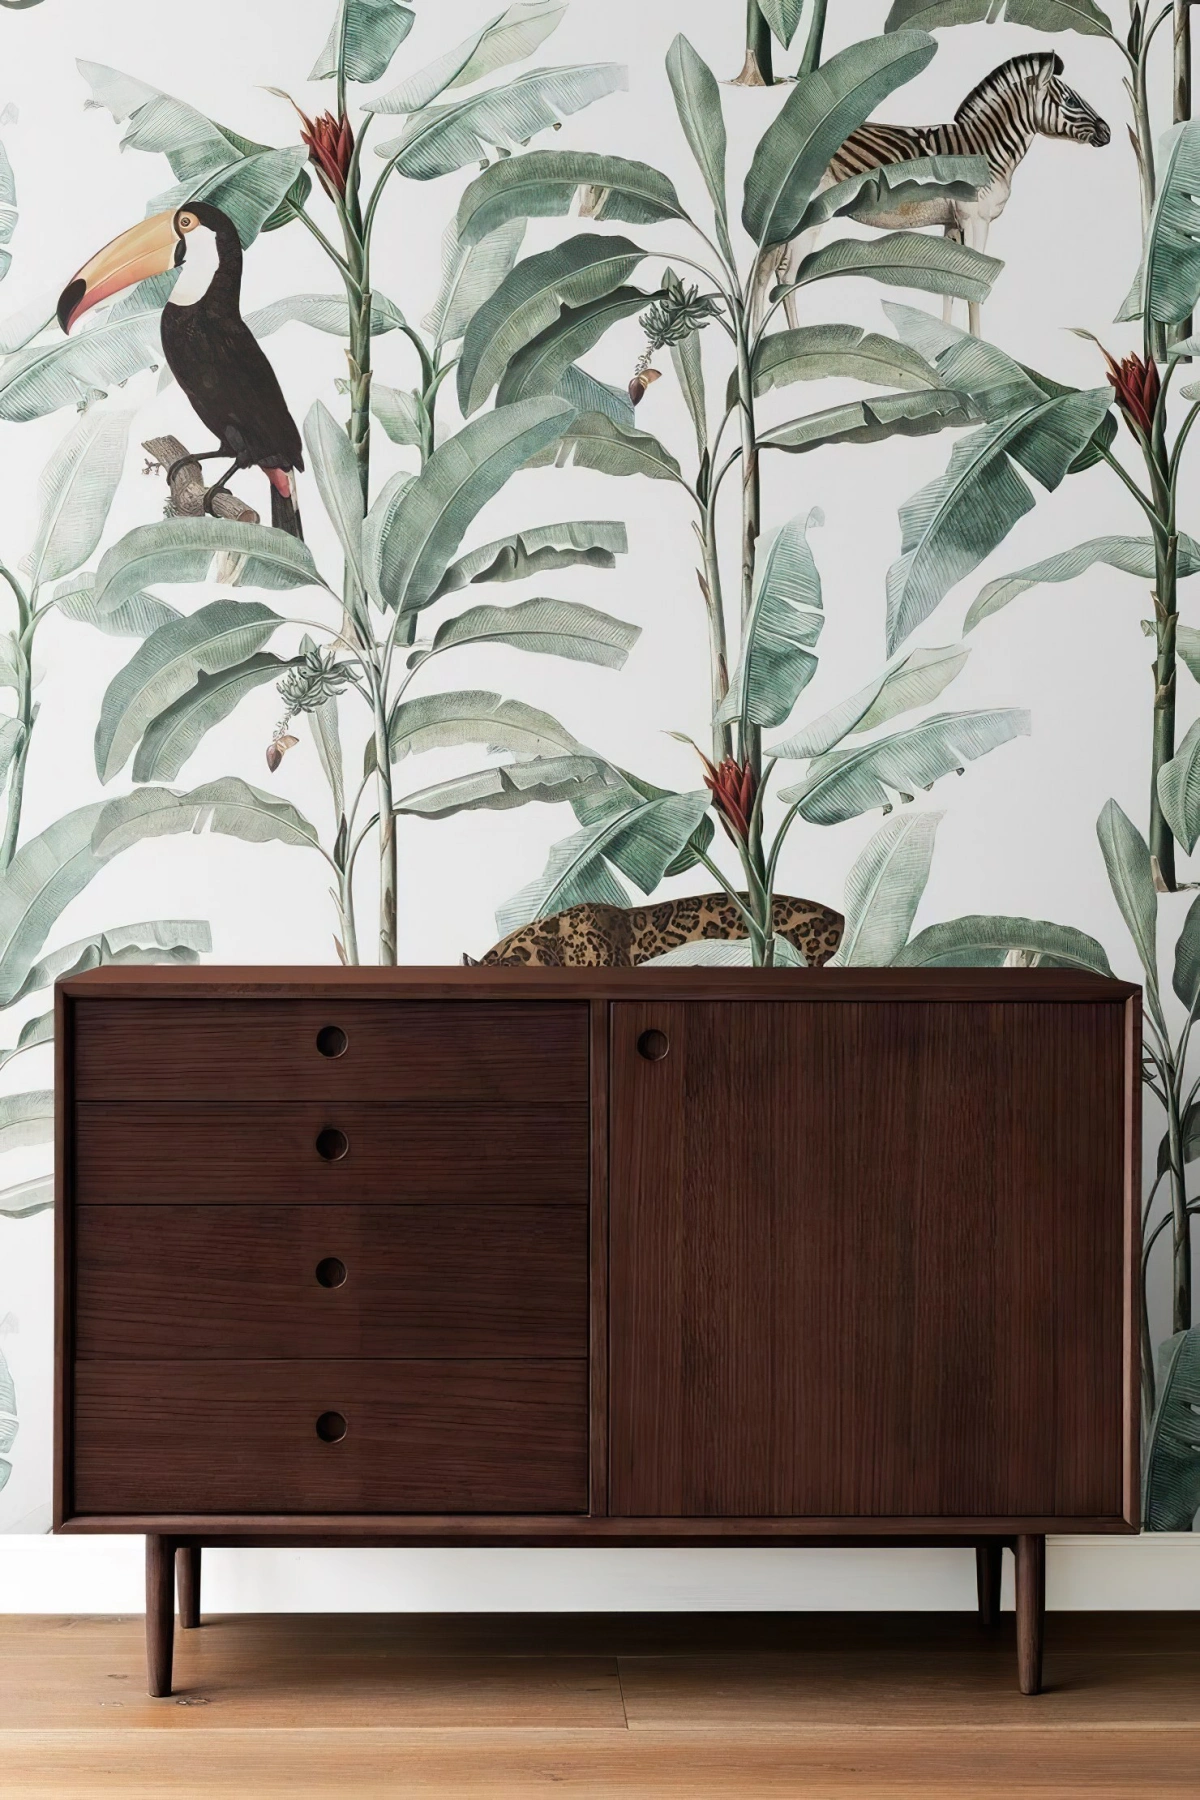 papier peint mural motifs feuillages palmier oiseau tropicaux imprimes